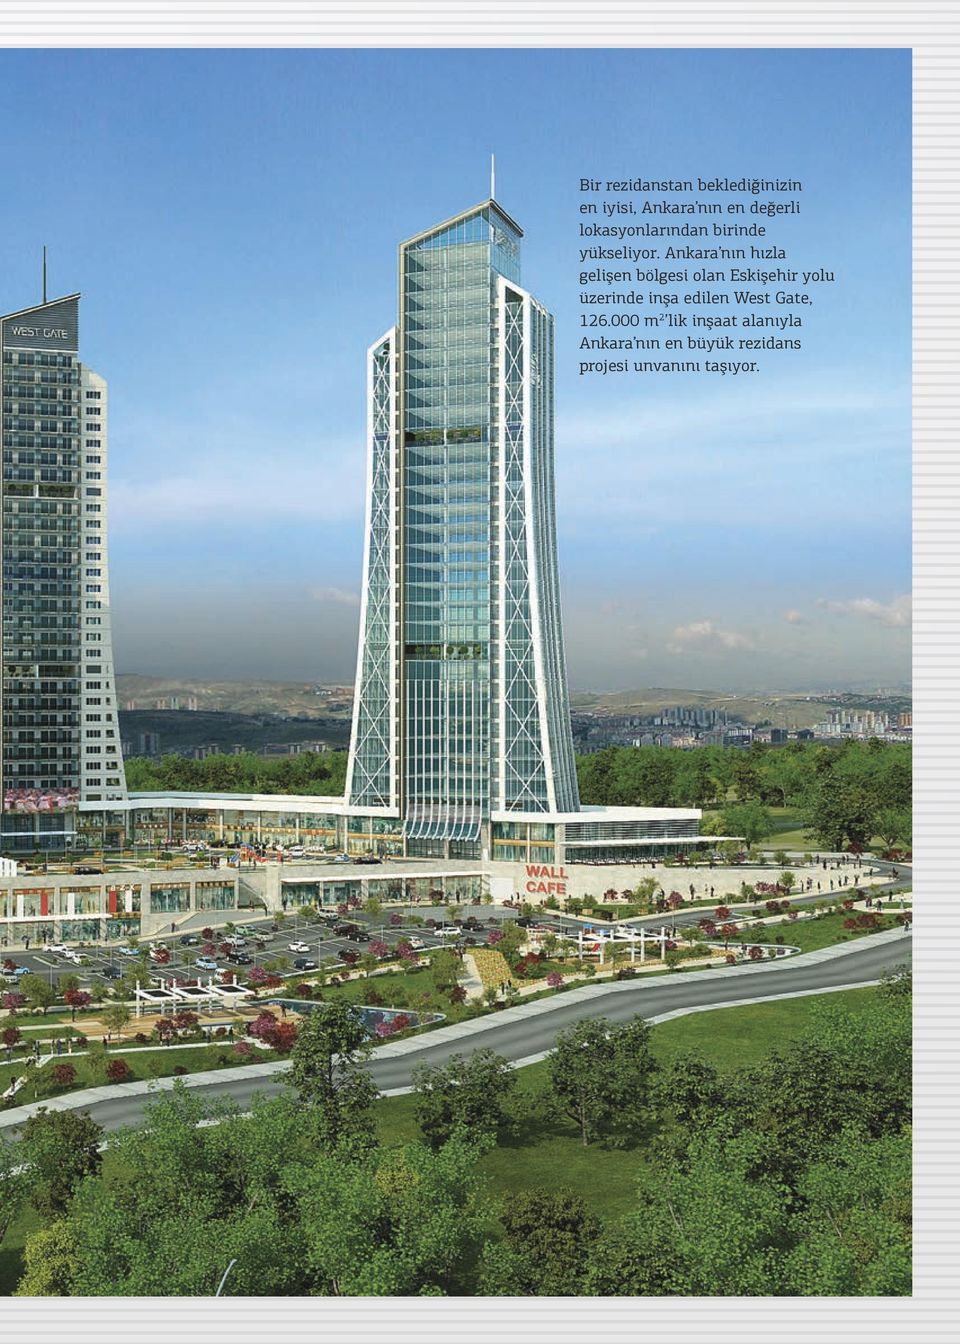 Ankara nın hızla gelişen bölgesi olan Eskişehir yolu üzerinde inşa